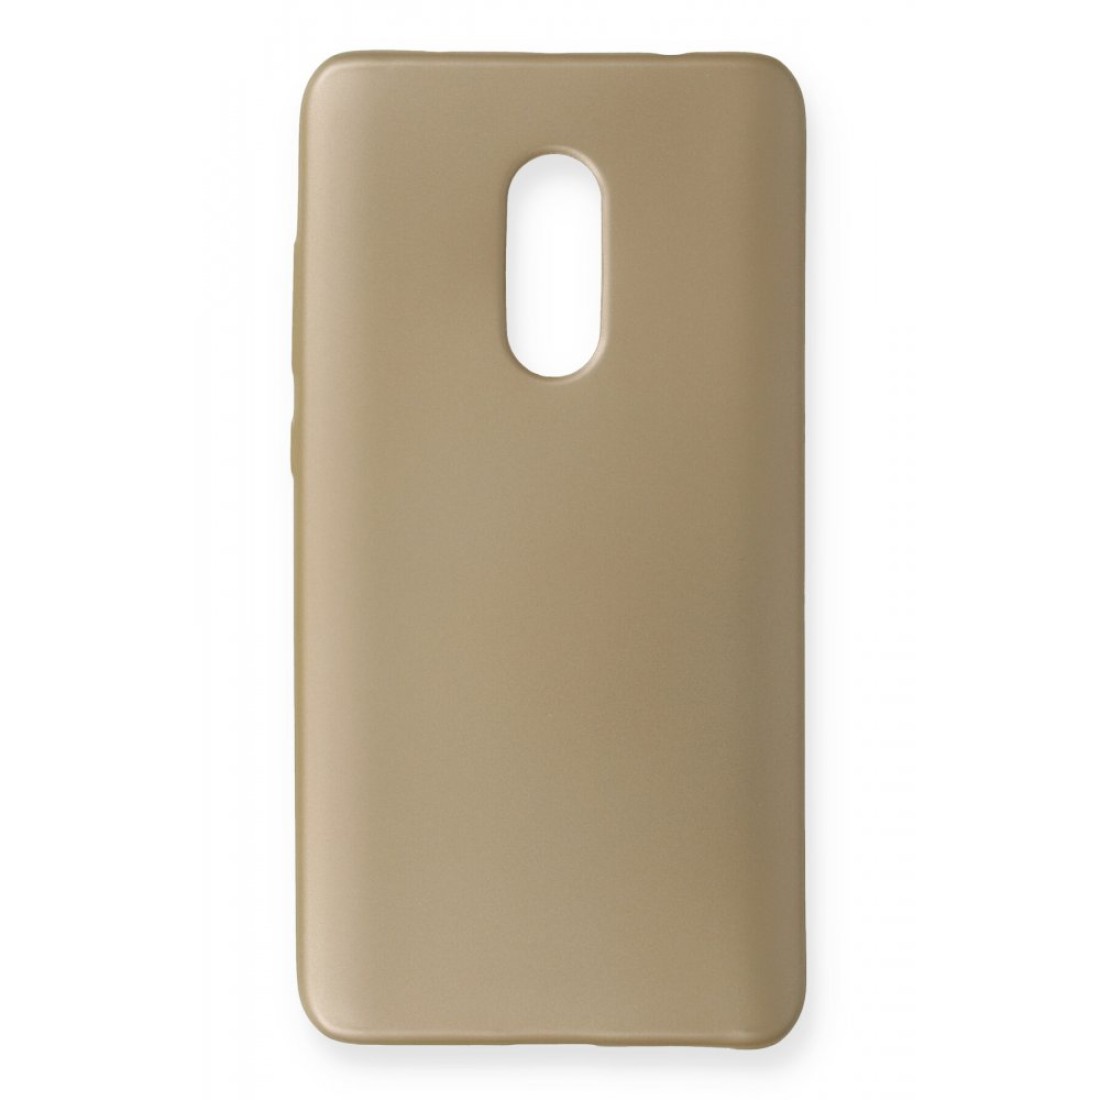 Xiaomi Redmi Note 4 Kılıf Premium Rubber Silikon - Gold